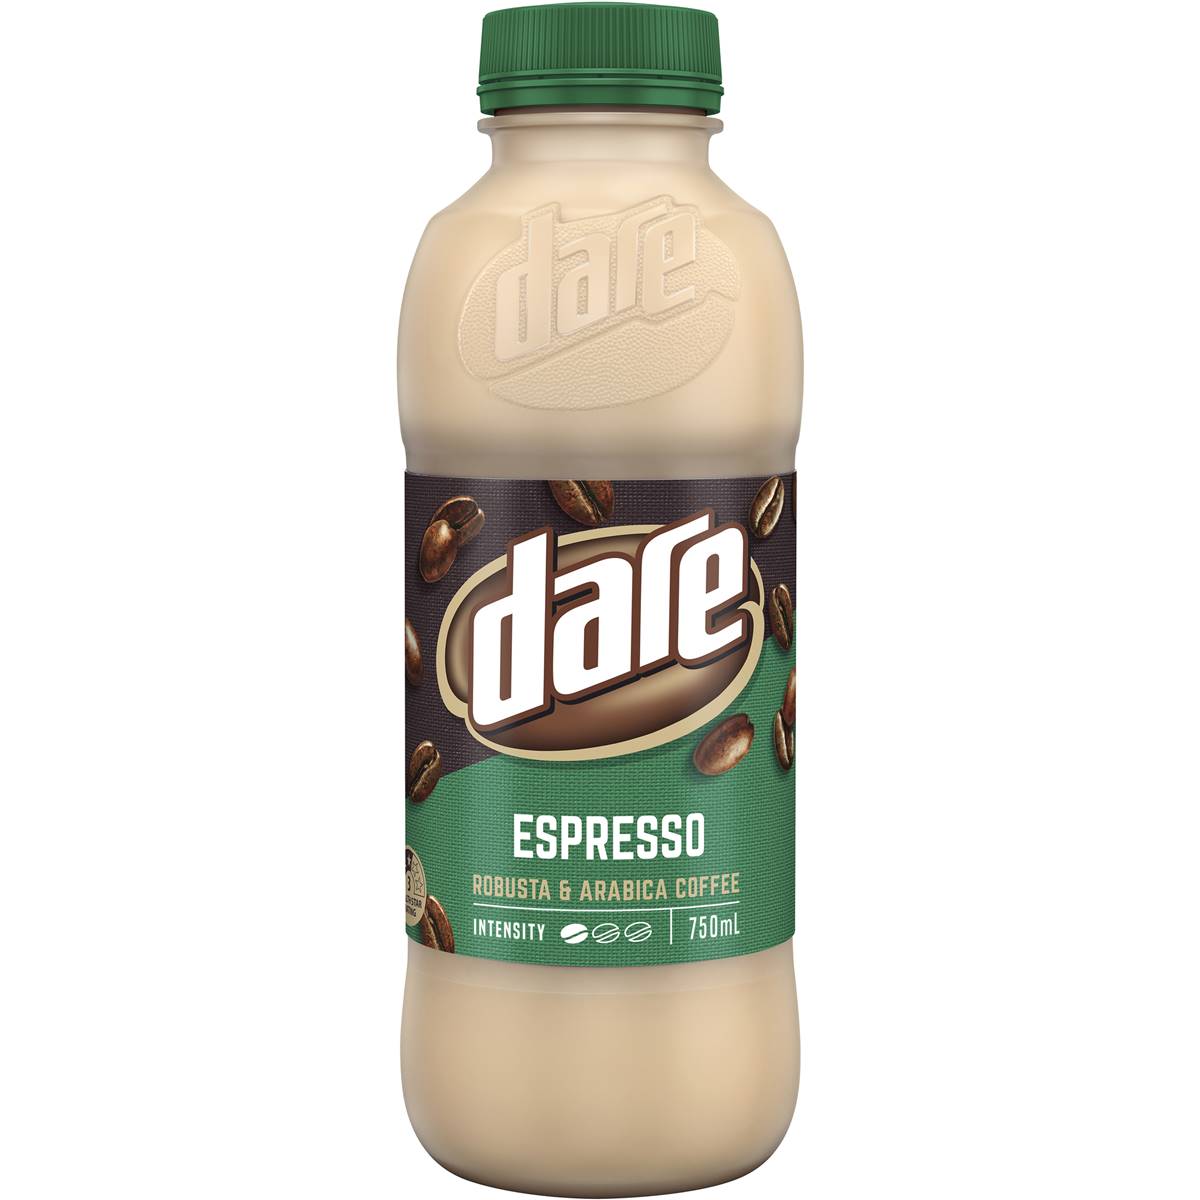 Dare Espresso Iced Coffee